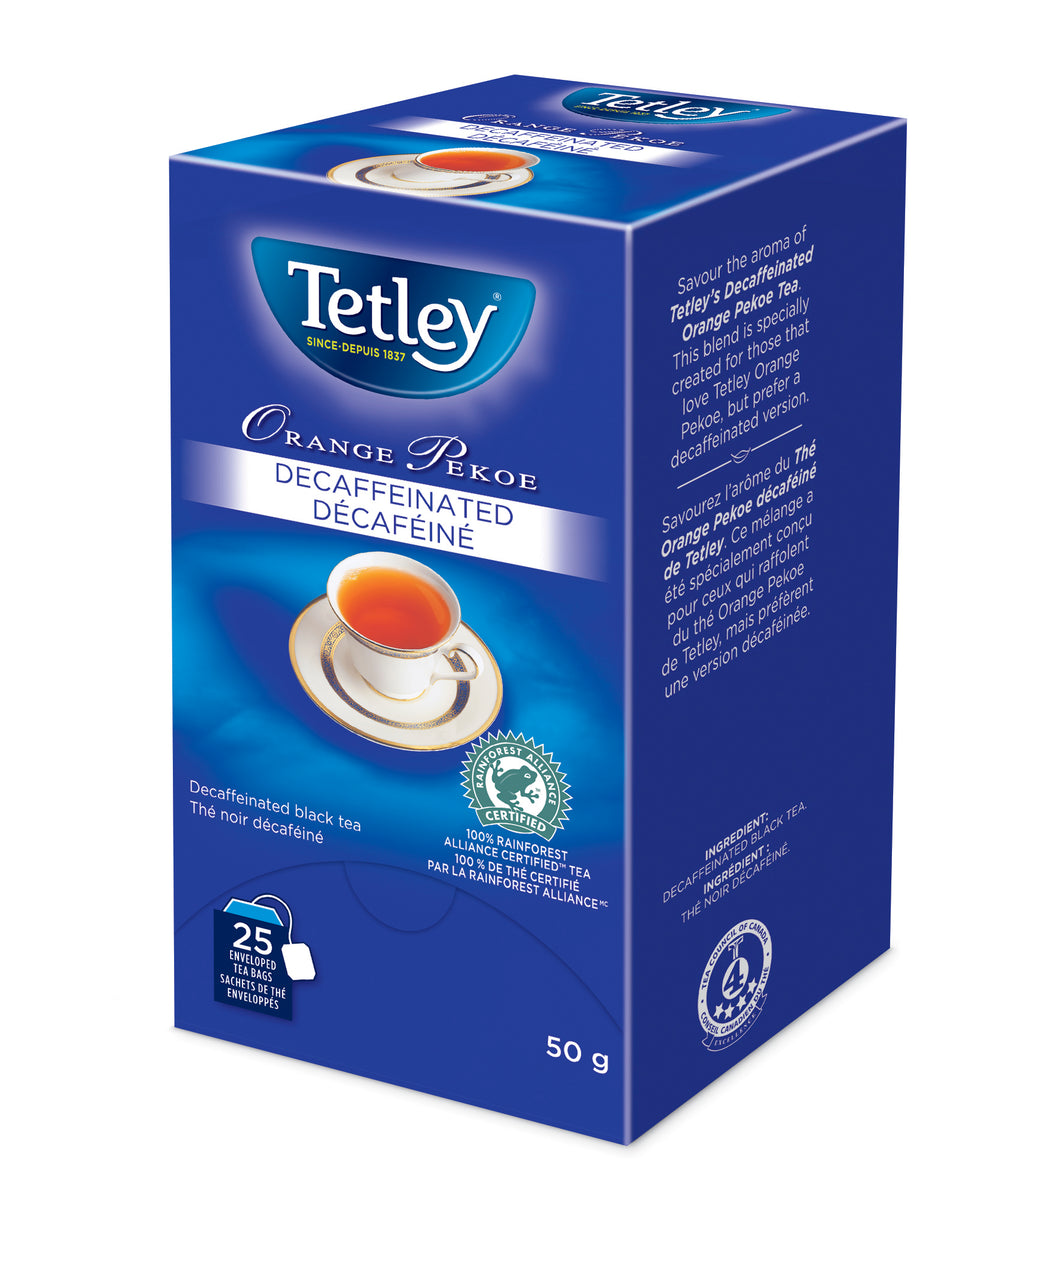 Tetley Tea Orange Pekoe Decaffeinated - 25